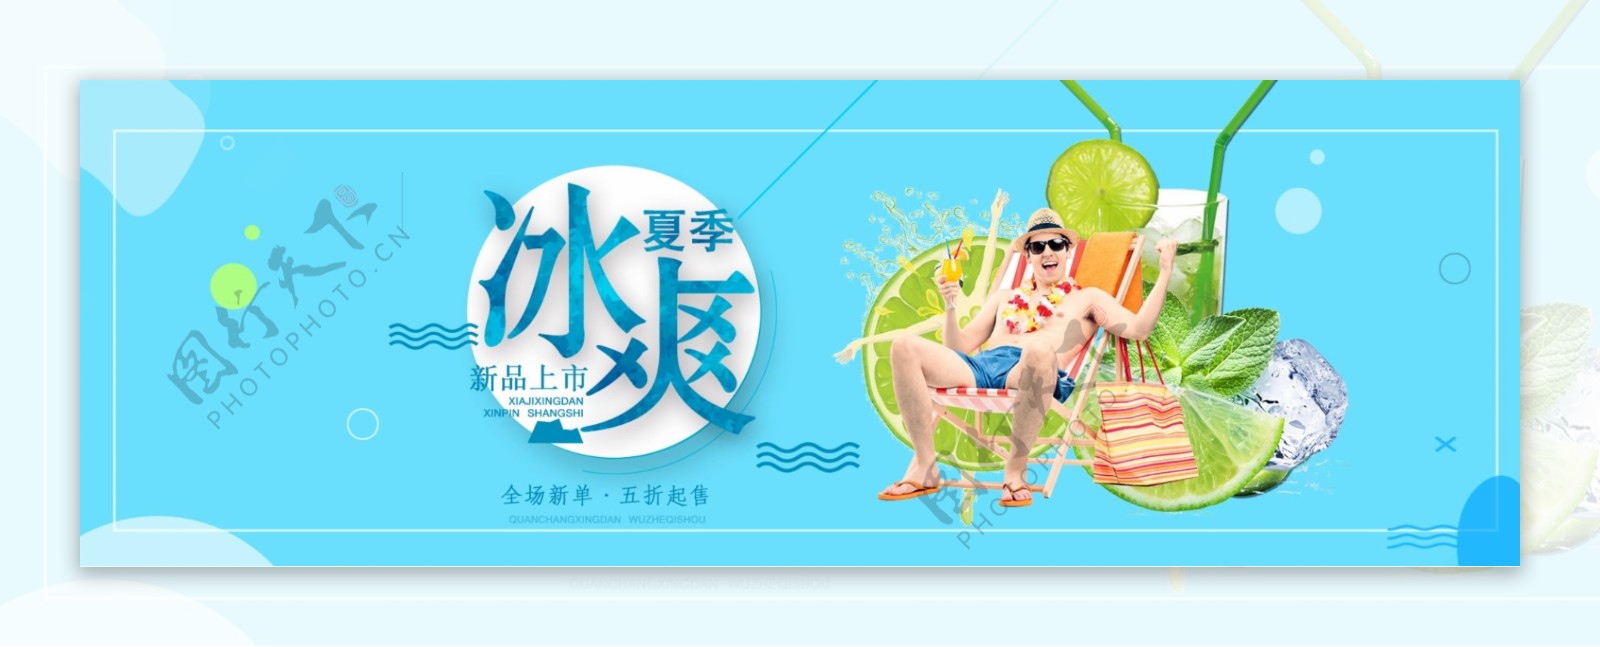 淘宝天猫夏季冷饮全屏海报设计